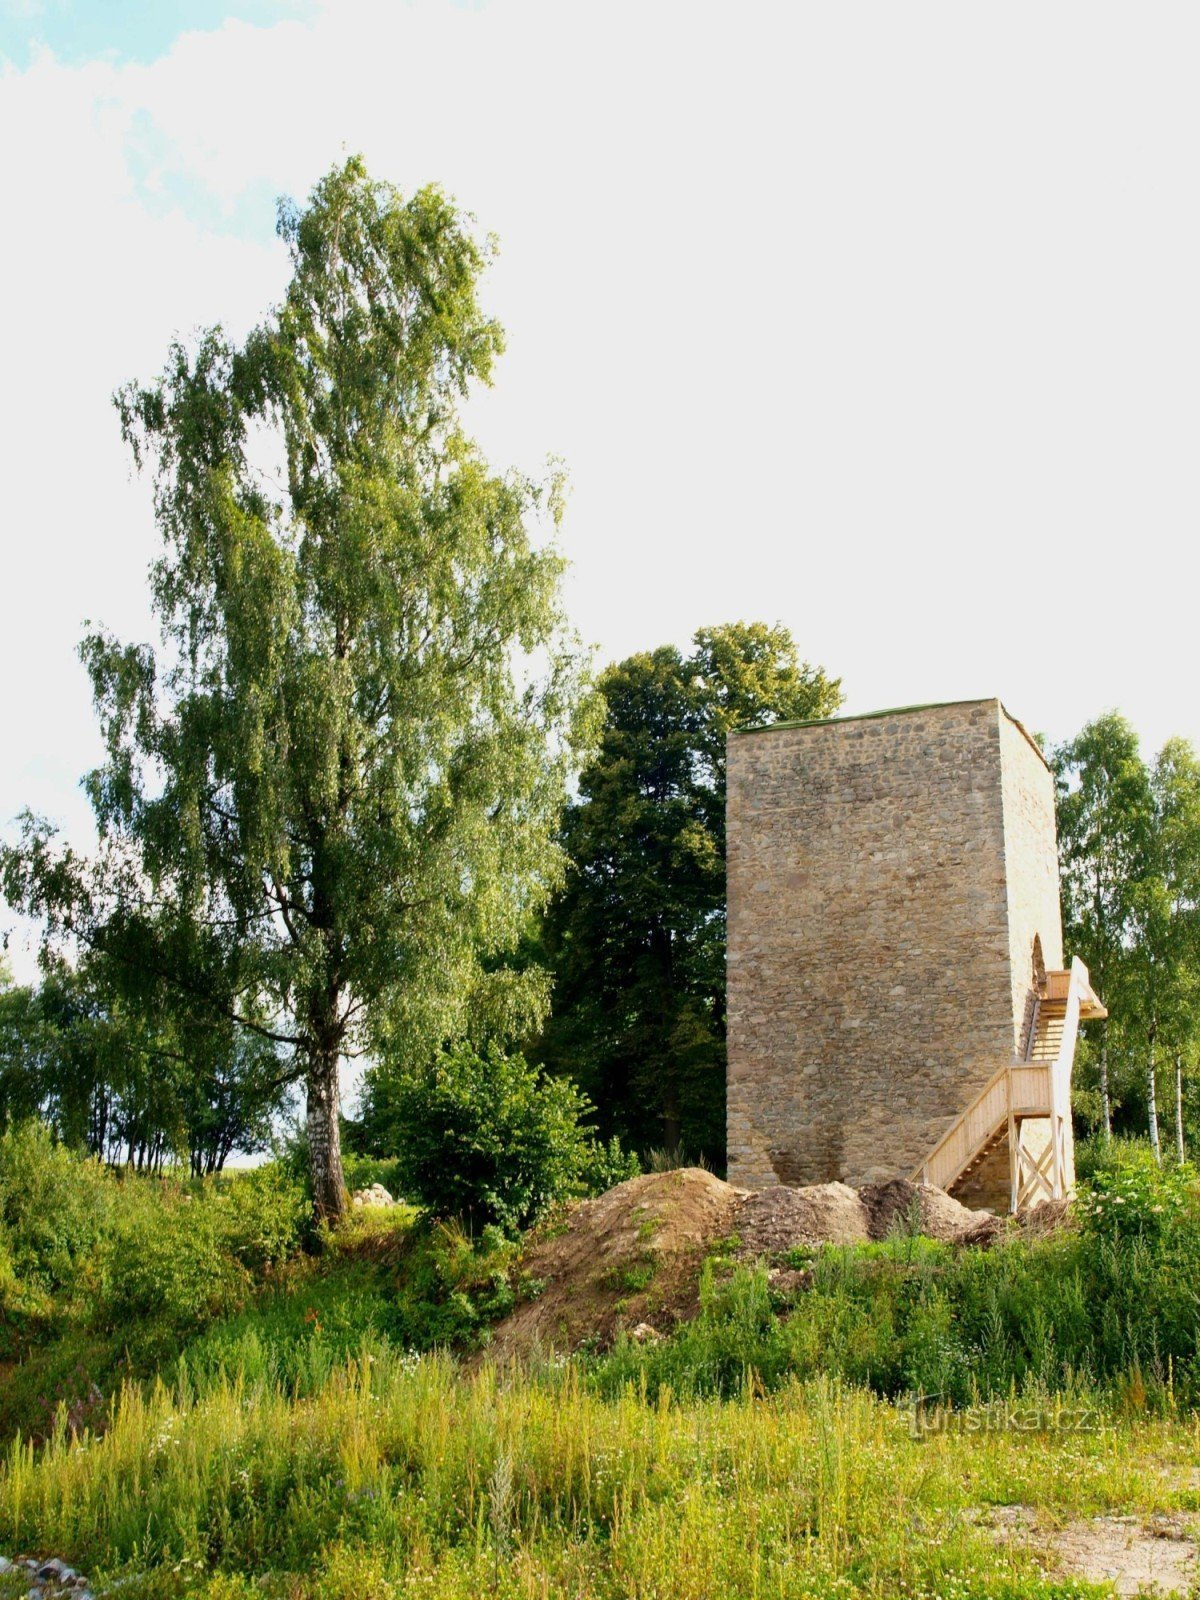 Снимок реконструированной крепостной башни с пруда